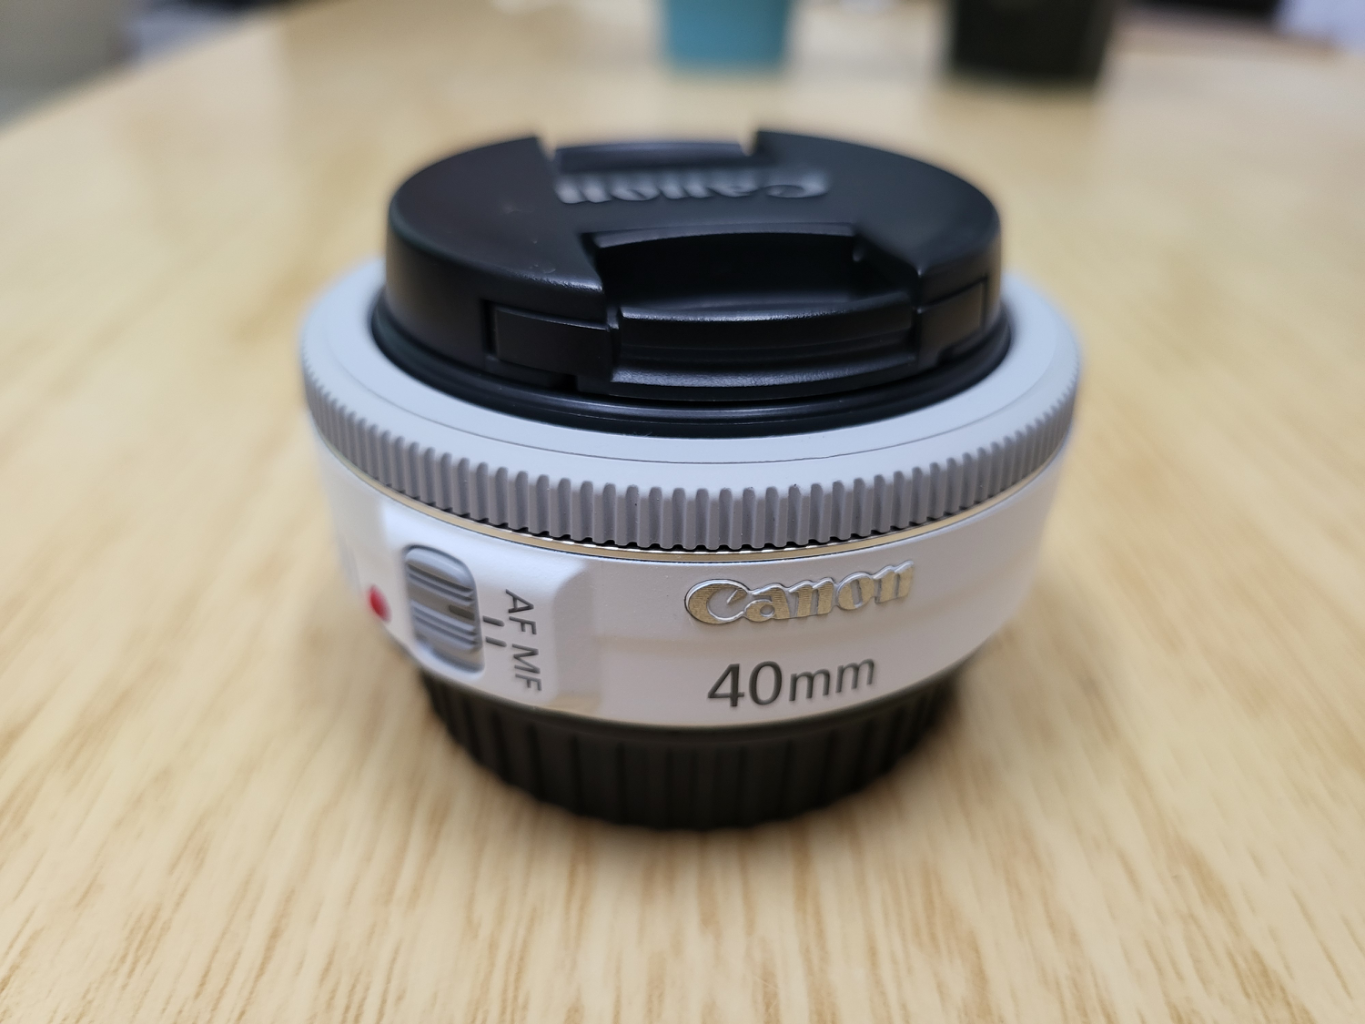 캐논 EF 40mm F2.8 단렌즈, 팬케잌렌즈